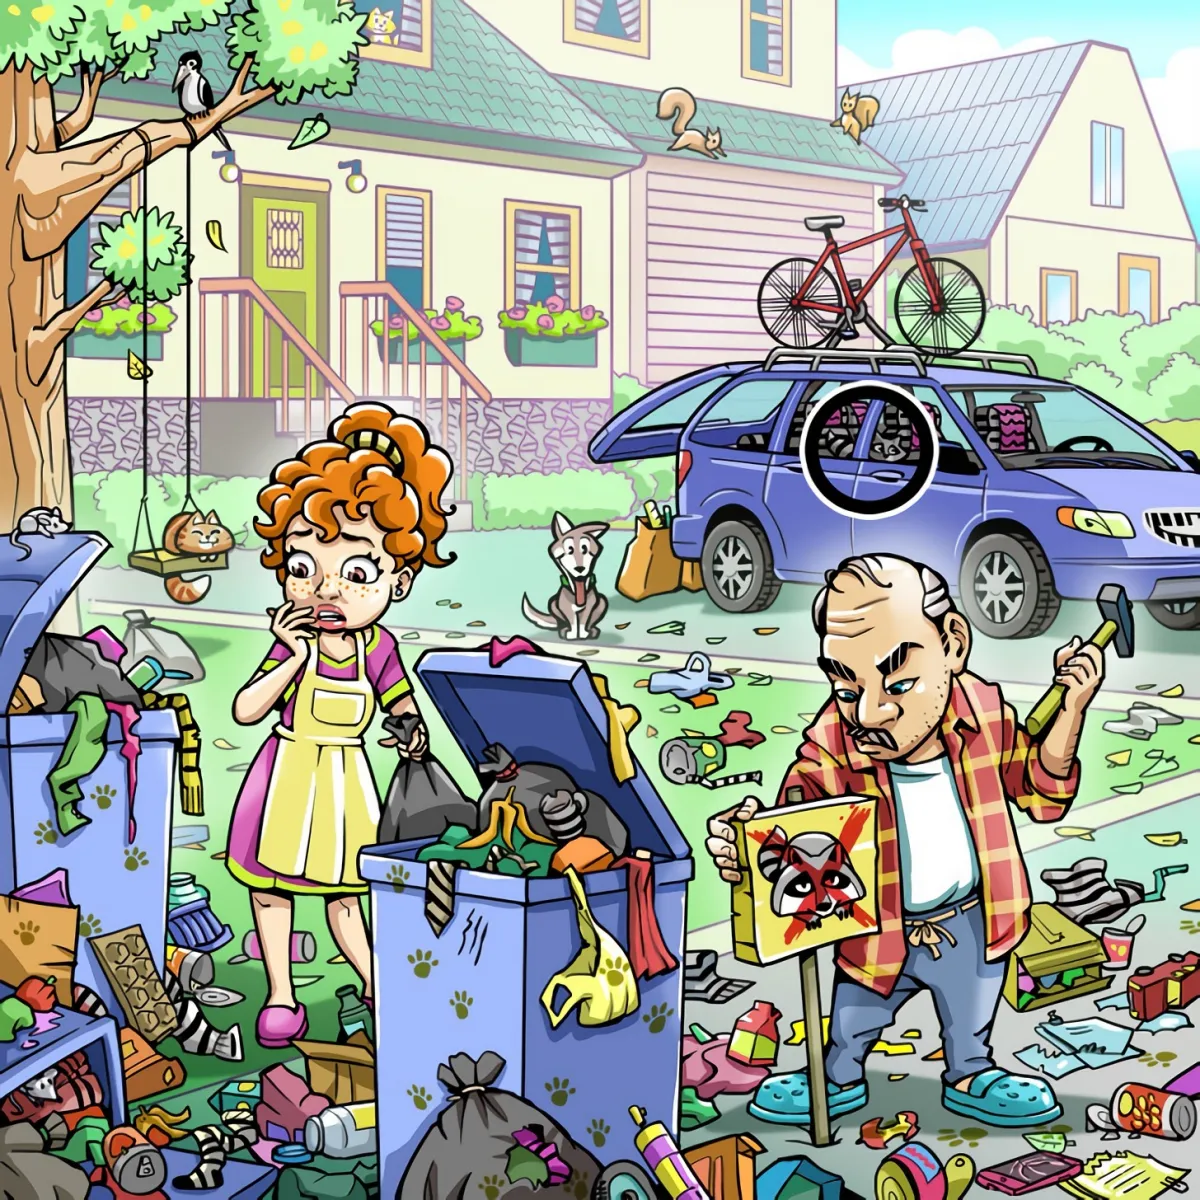 le raton laveur est dans la voiture du couple qui le cherche devant leur maison avec les poubelle en desordre